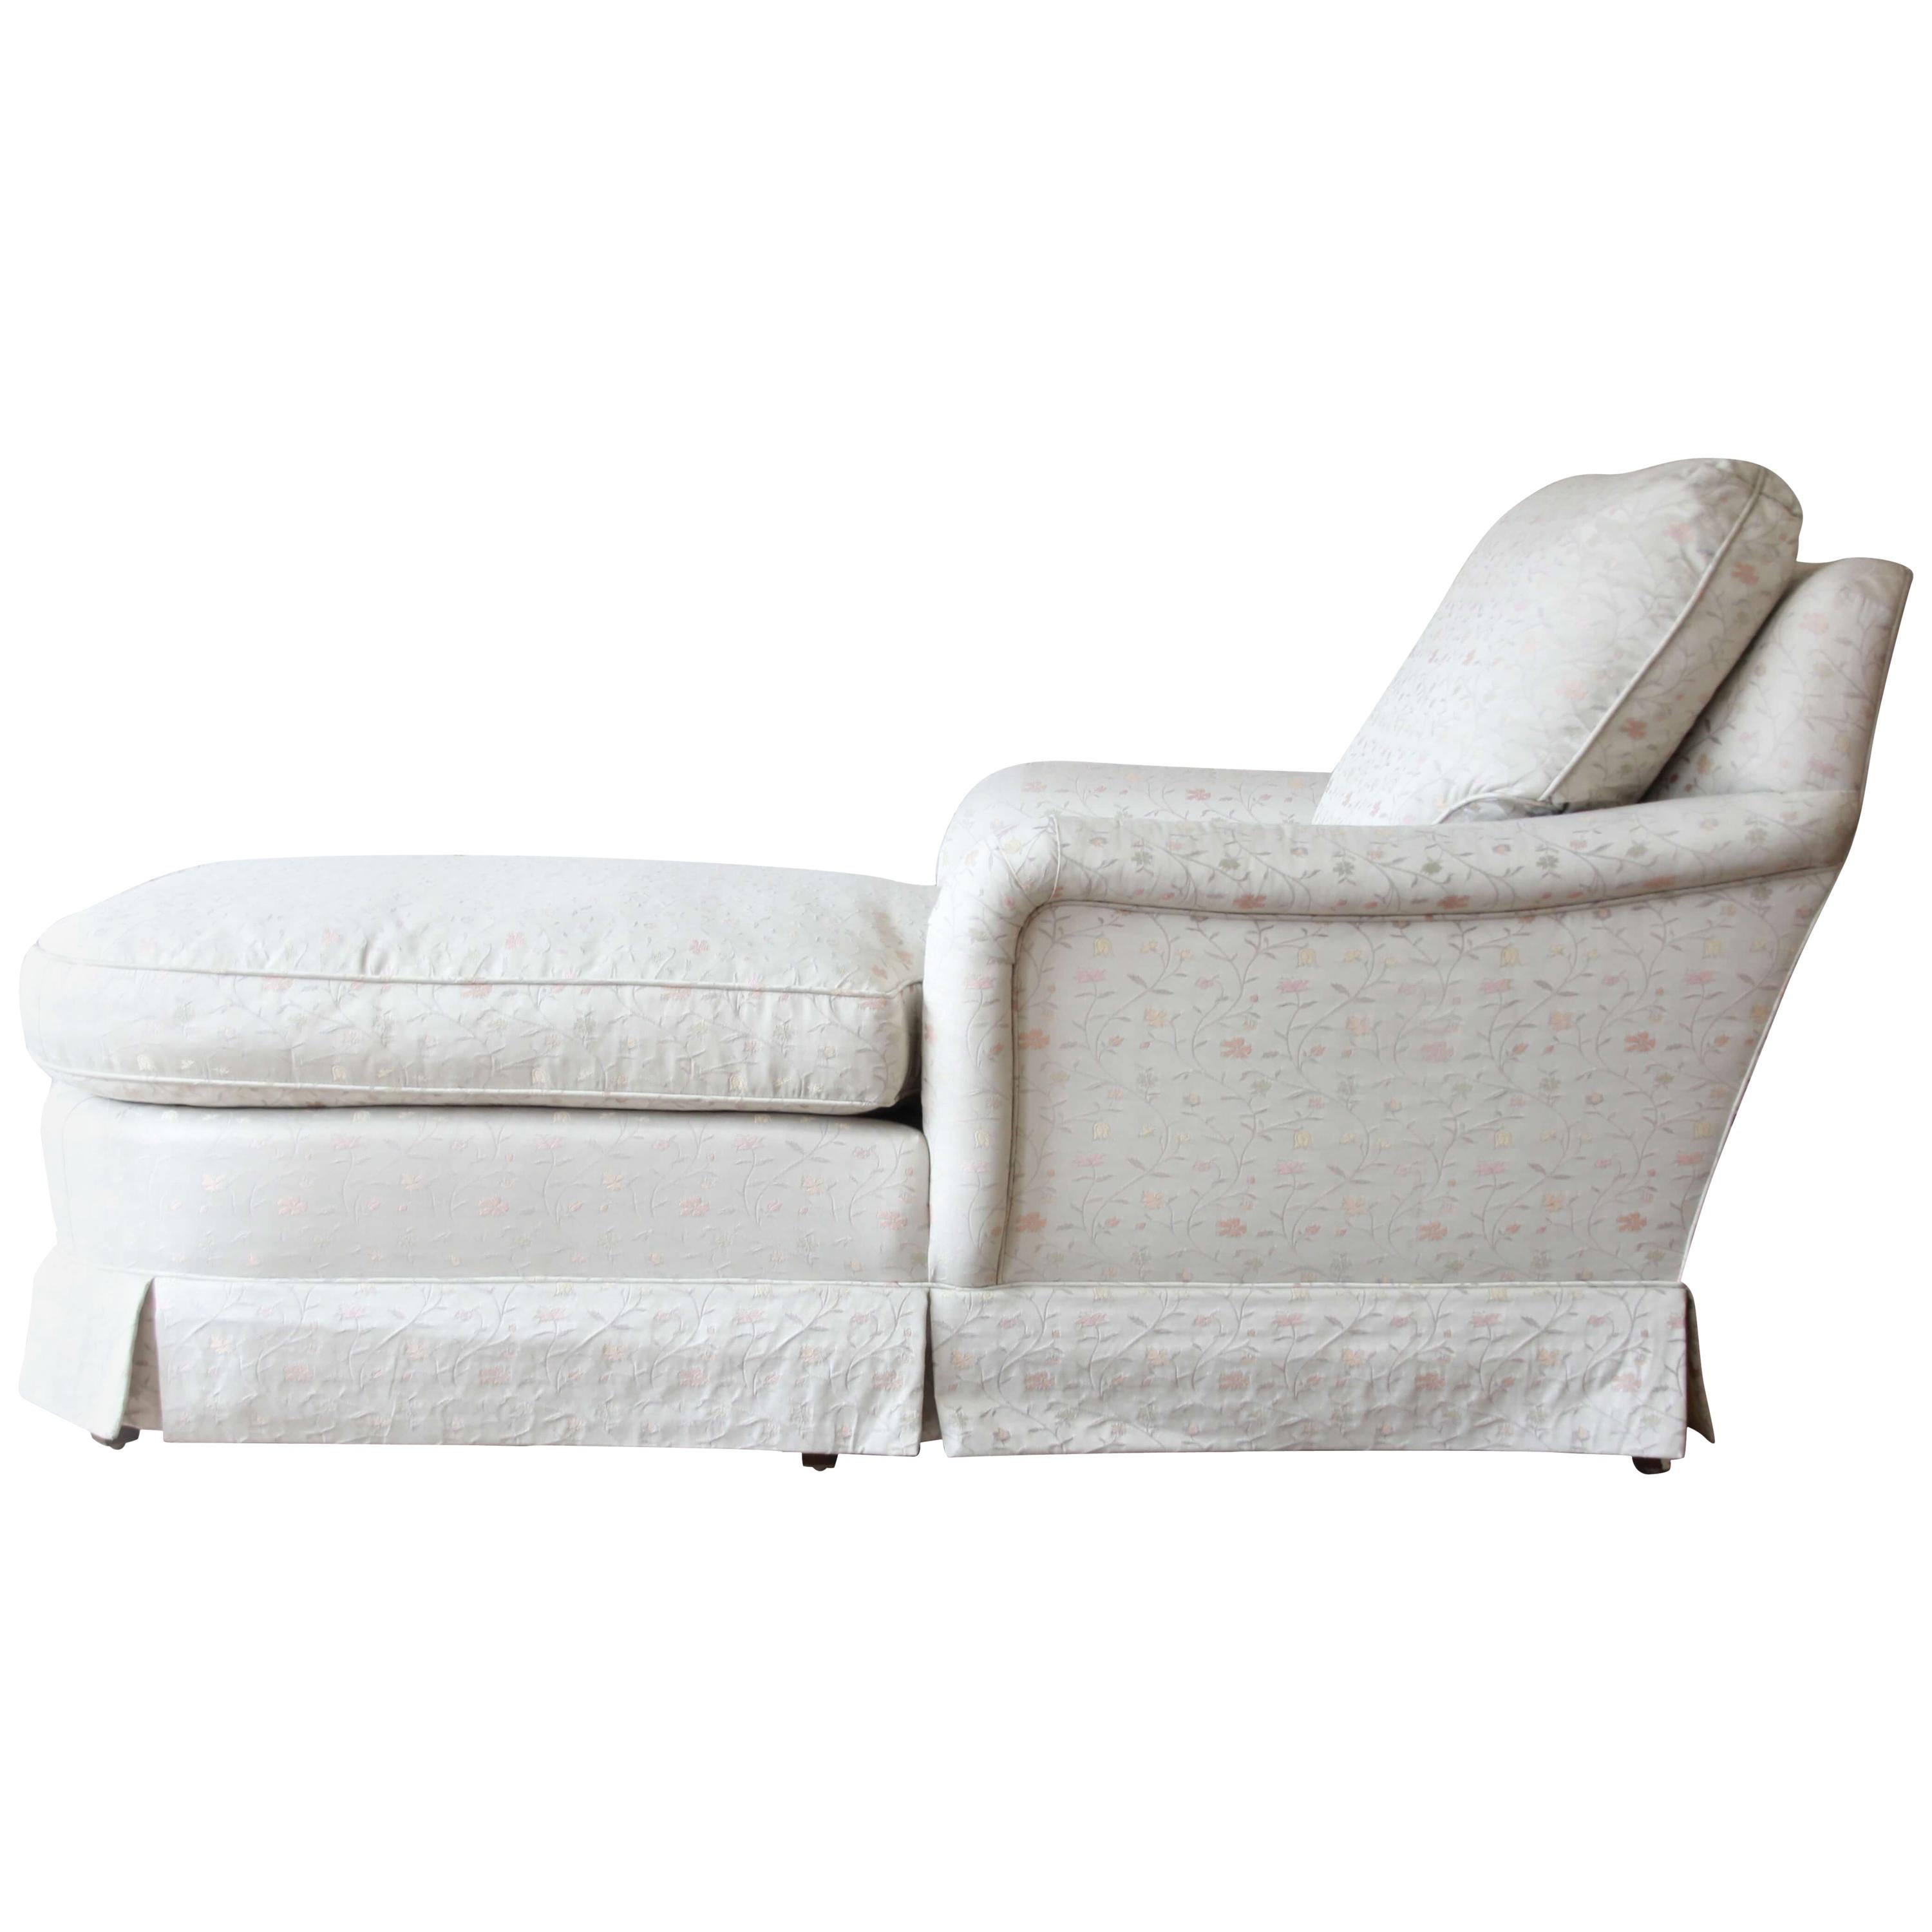 Vintage Baker Furniture Elegant Ivory Floral Upholstered Chaise Longue